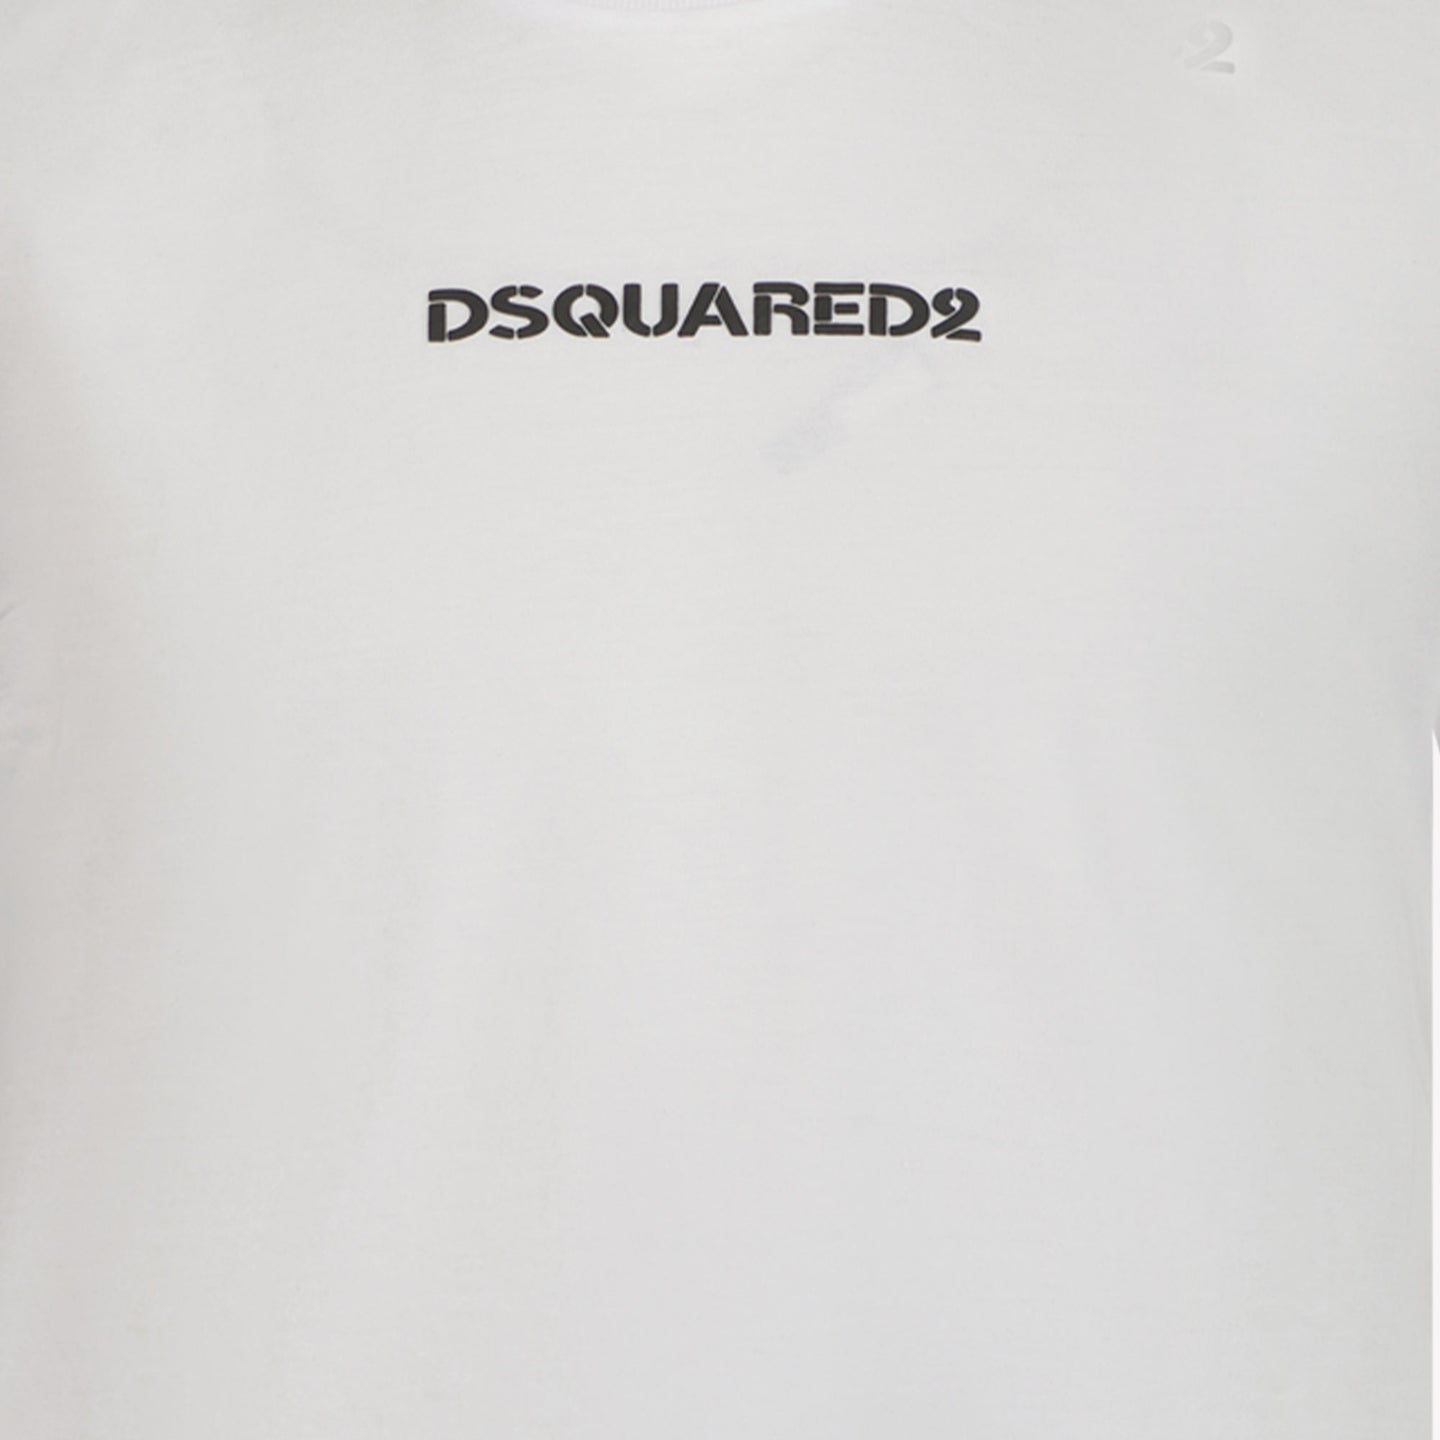 Dsquared2 Jungen T-Shirt Weiß